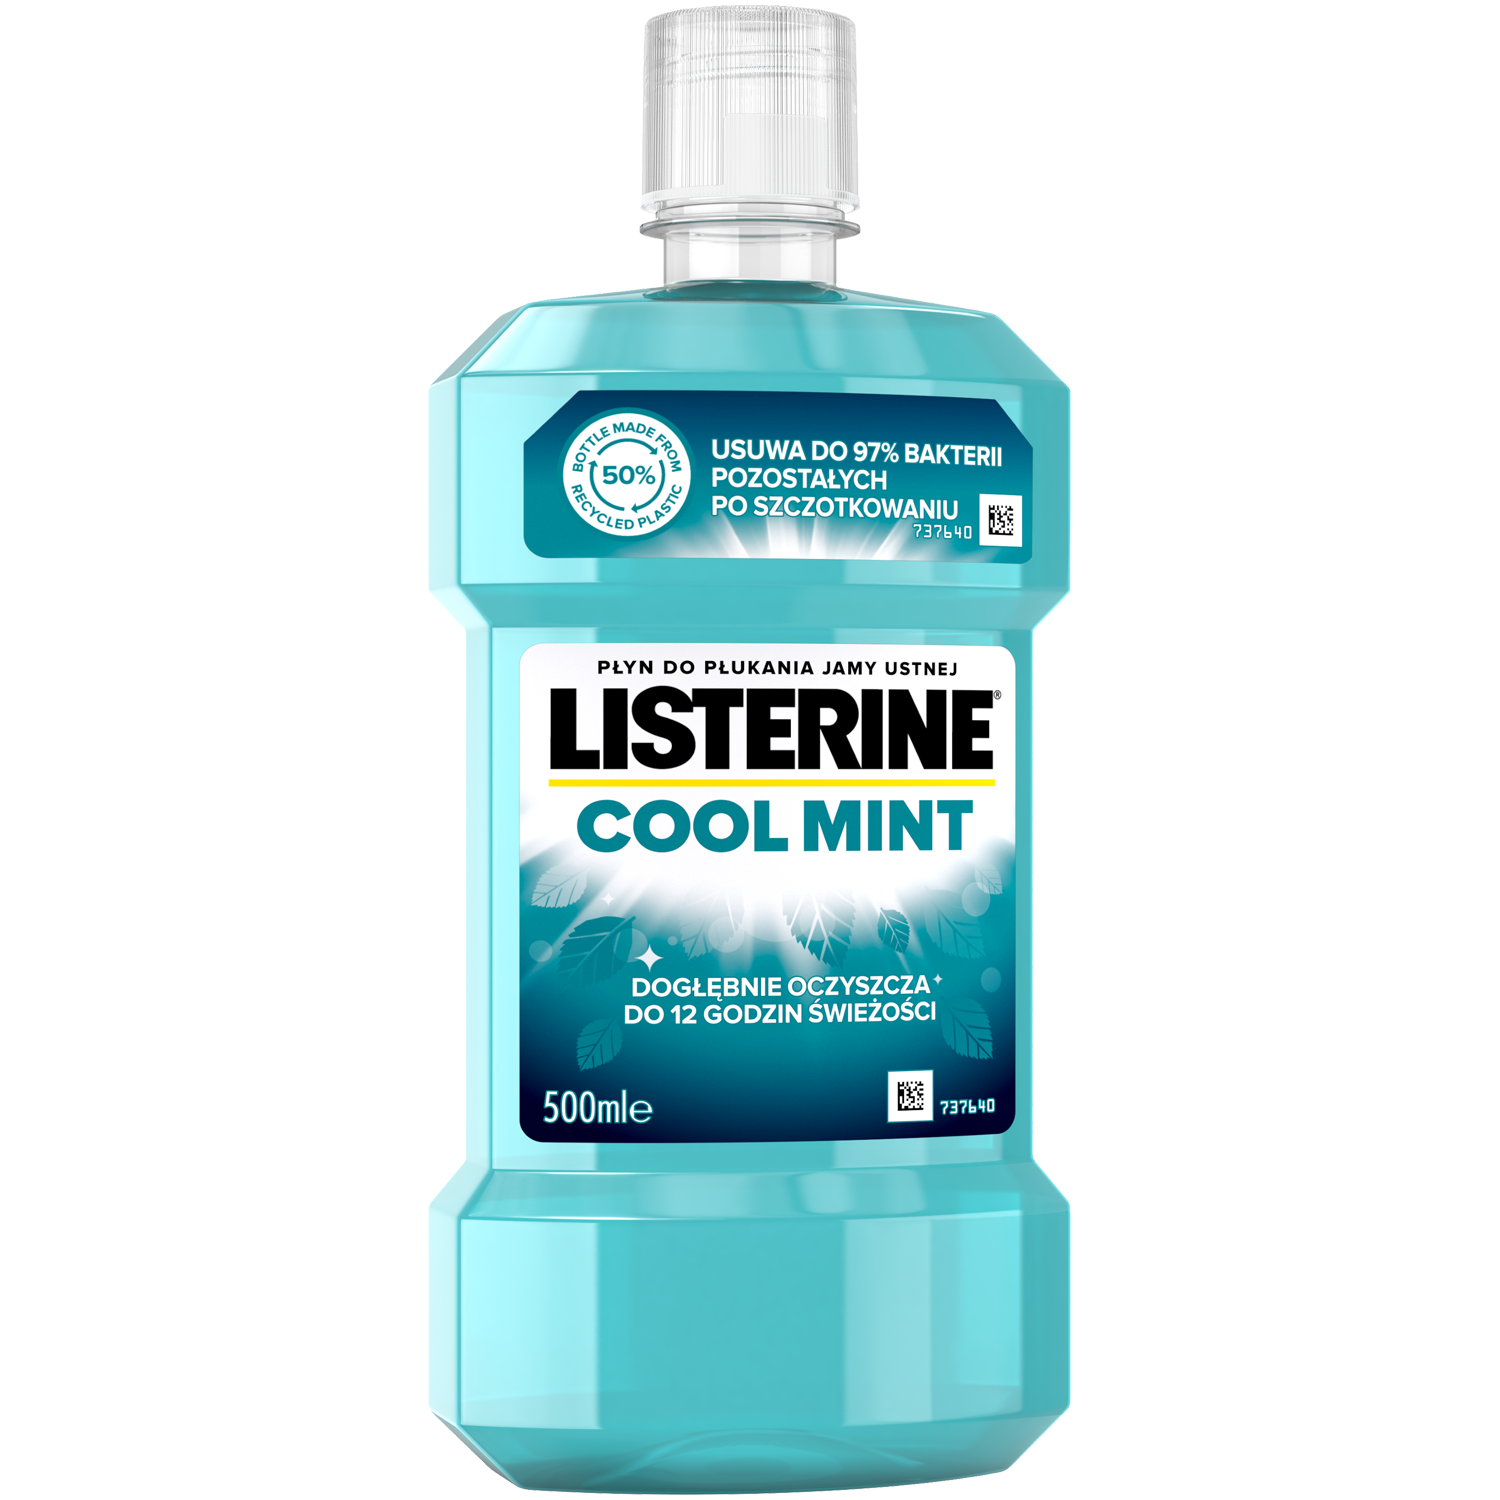 Listerine жидкость для полоскания рта, 500 мл цена и фото